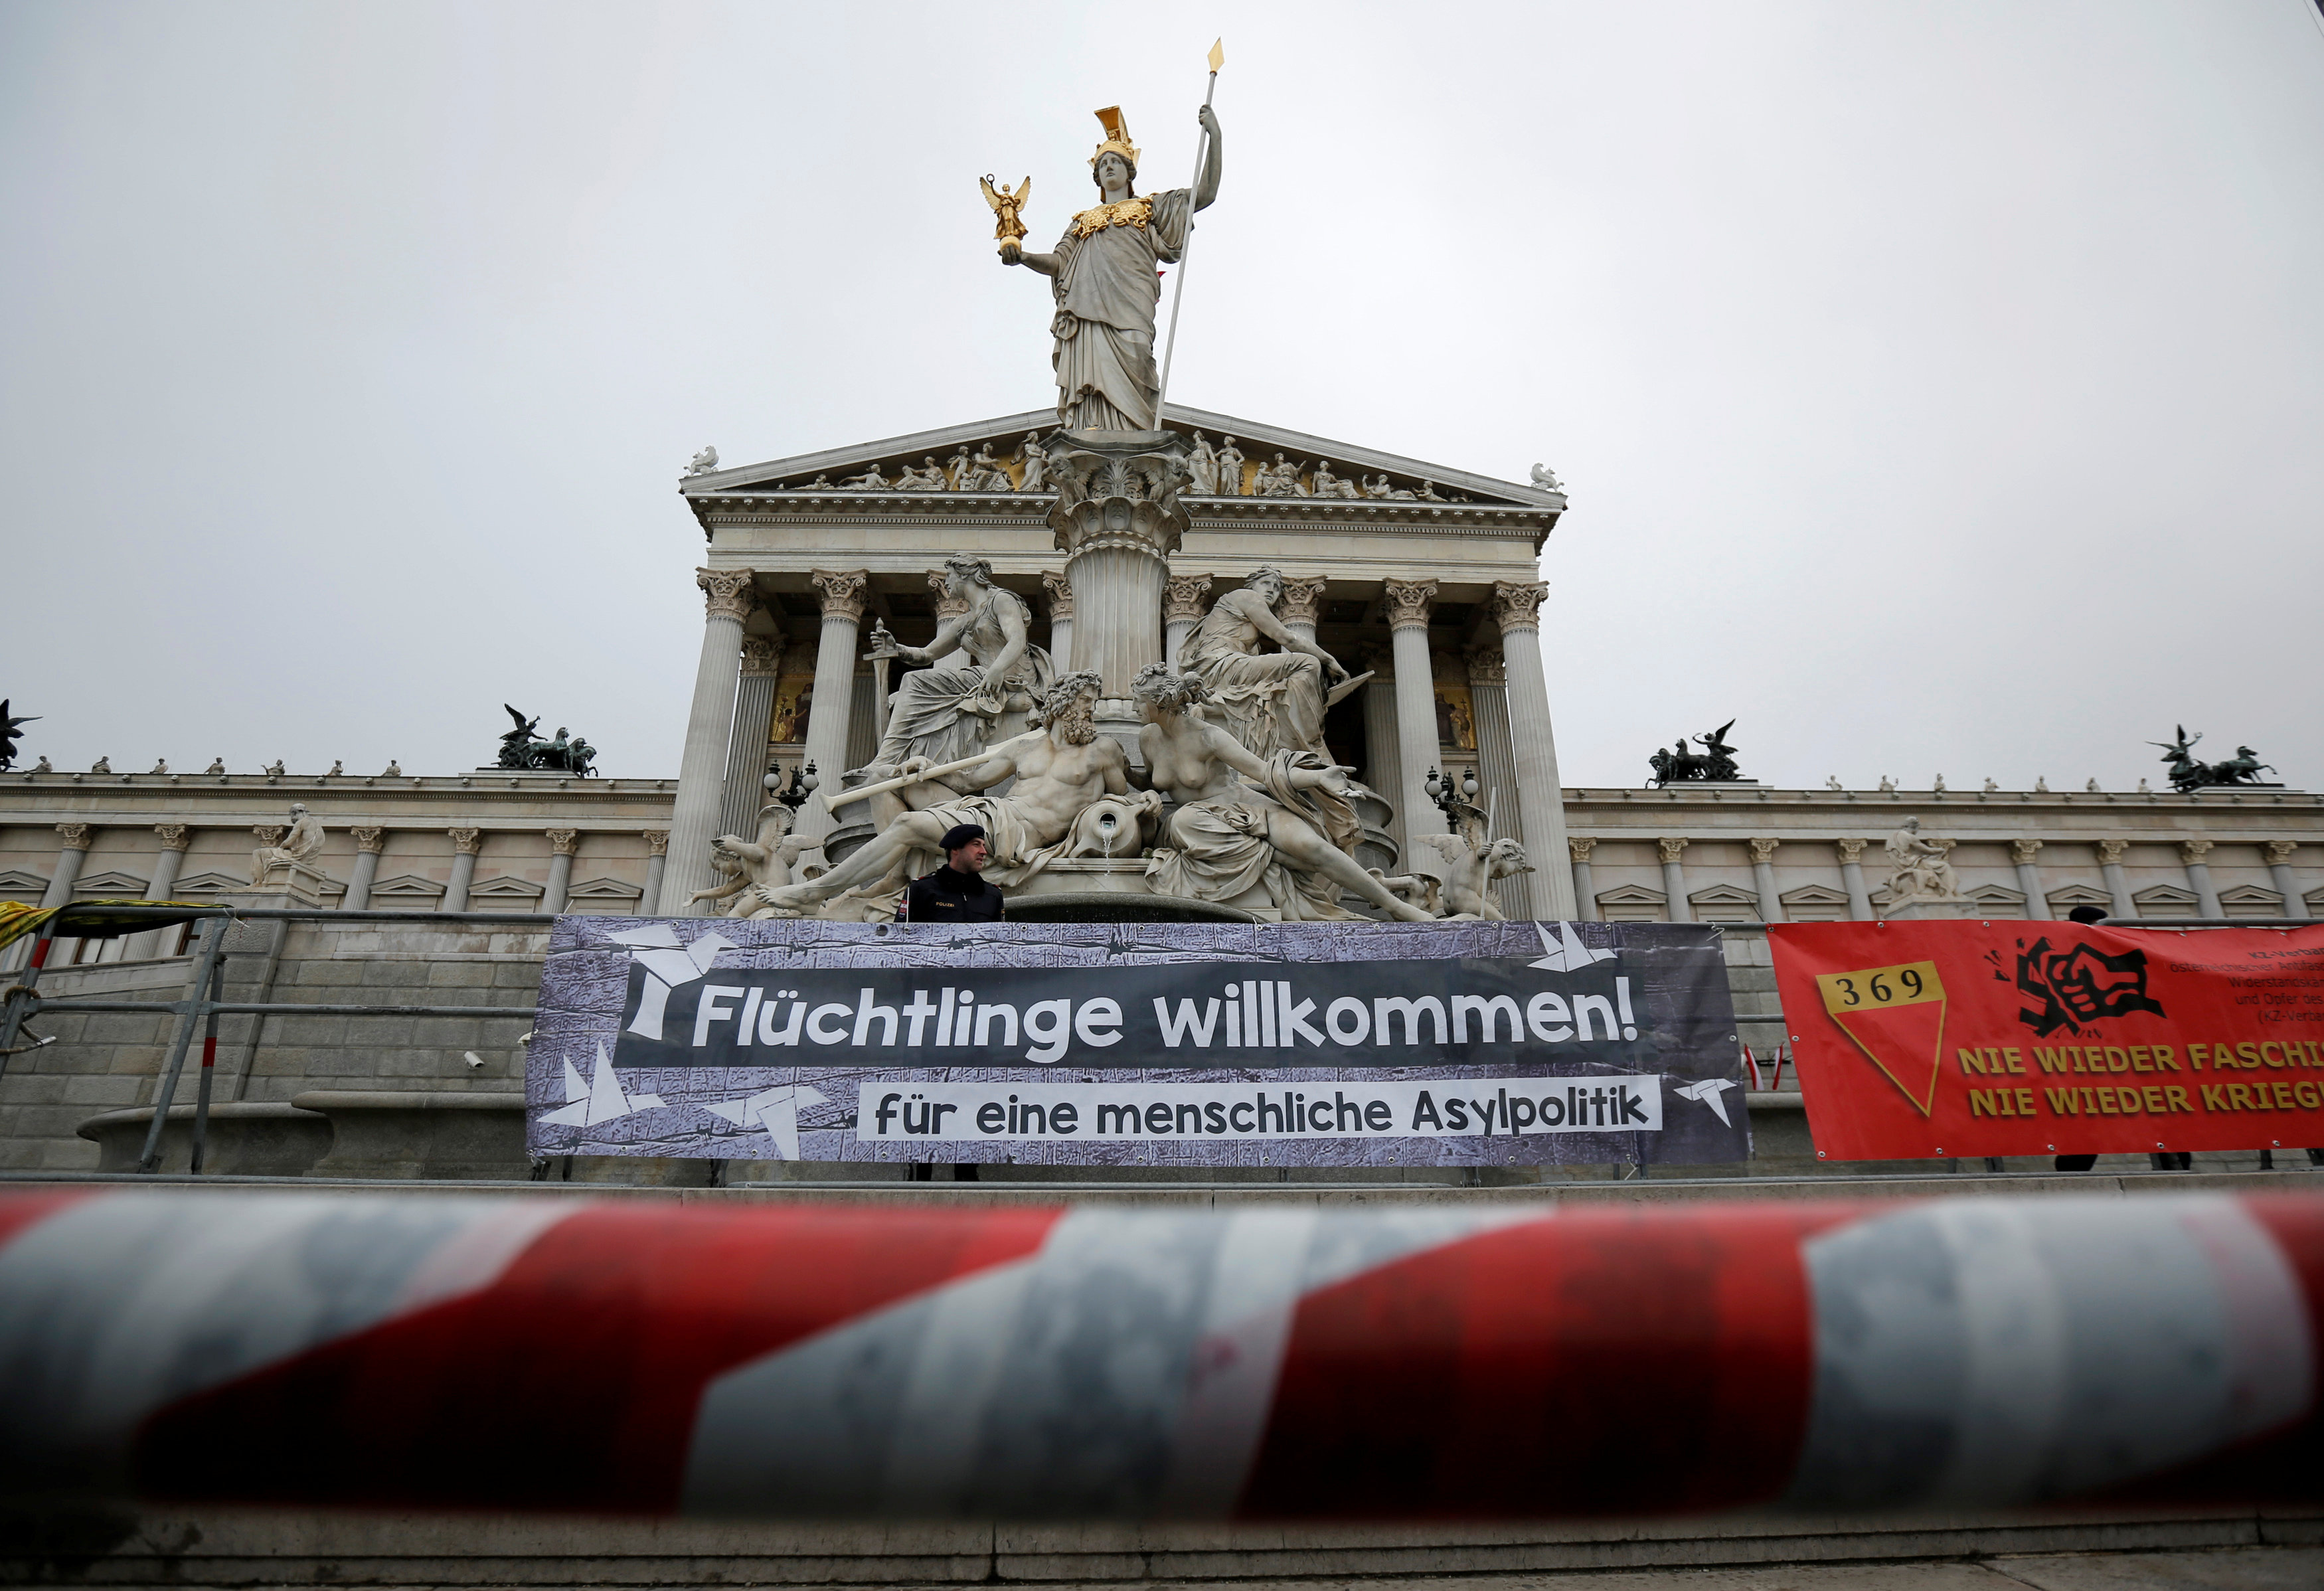 Τις τελευταίες πινελιές βάζει η Αυστρία στο διάταγμα για «προσφυγικό μπλόκο»